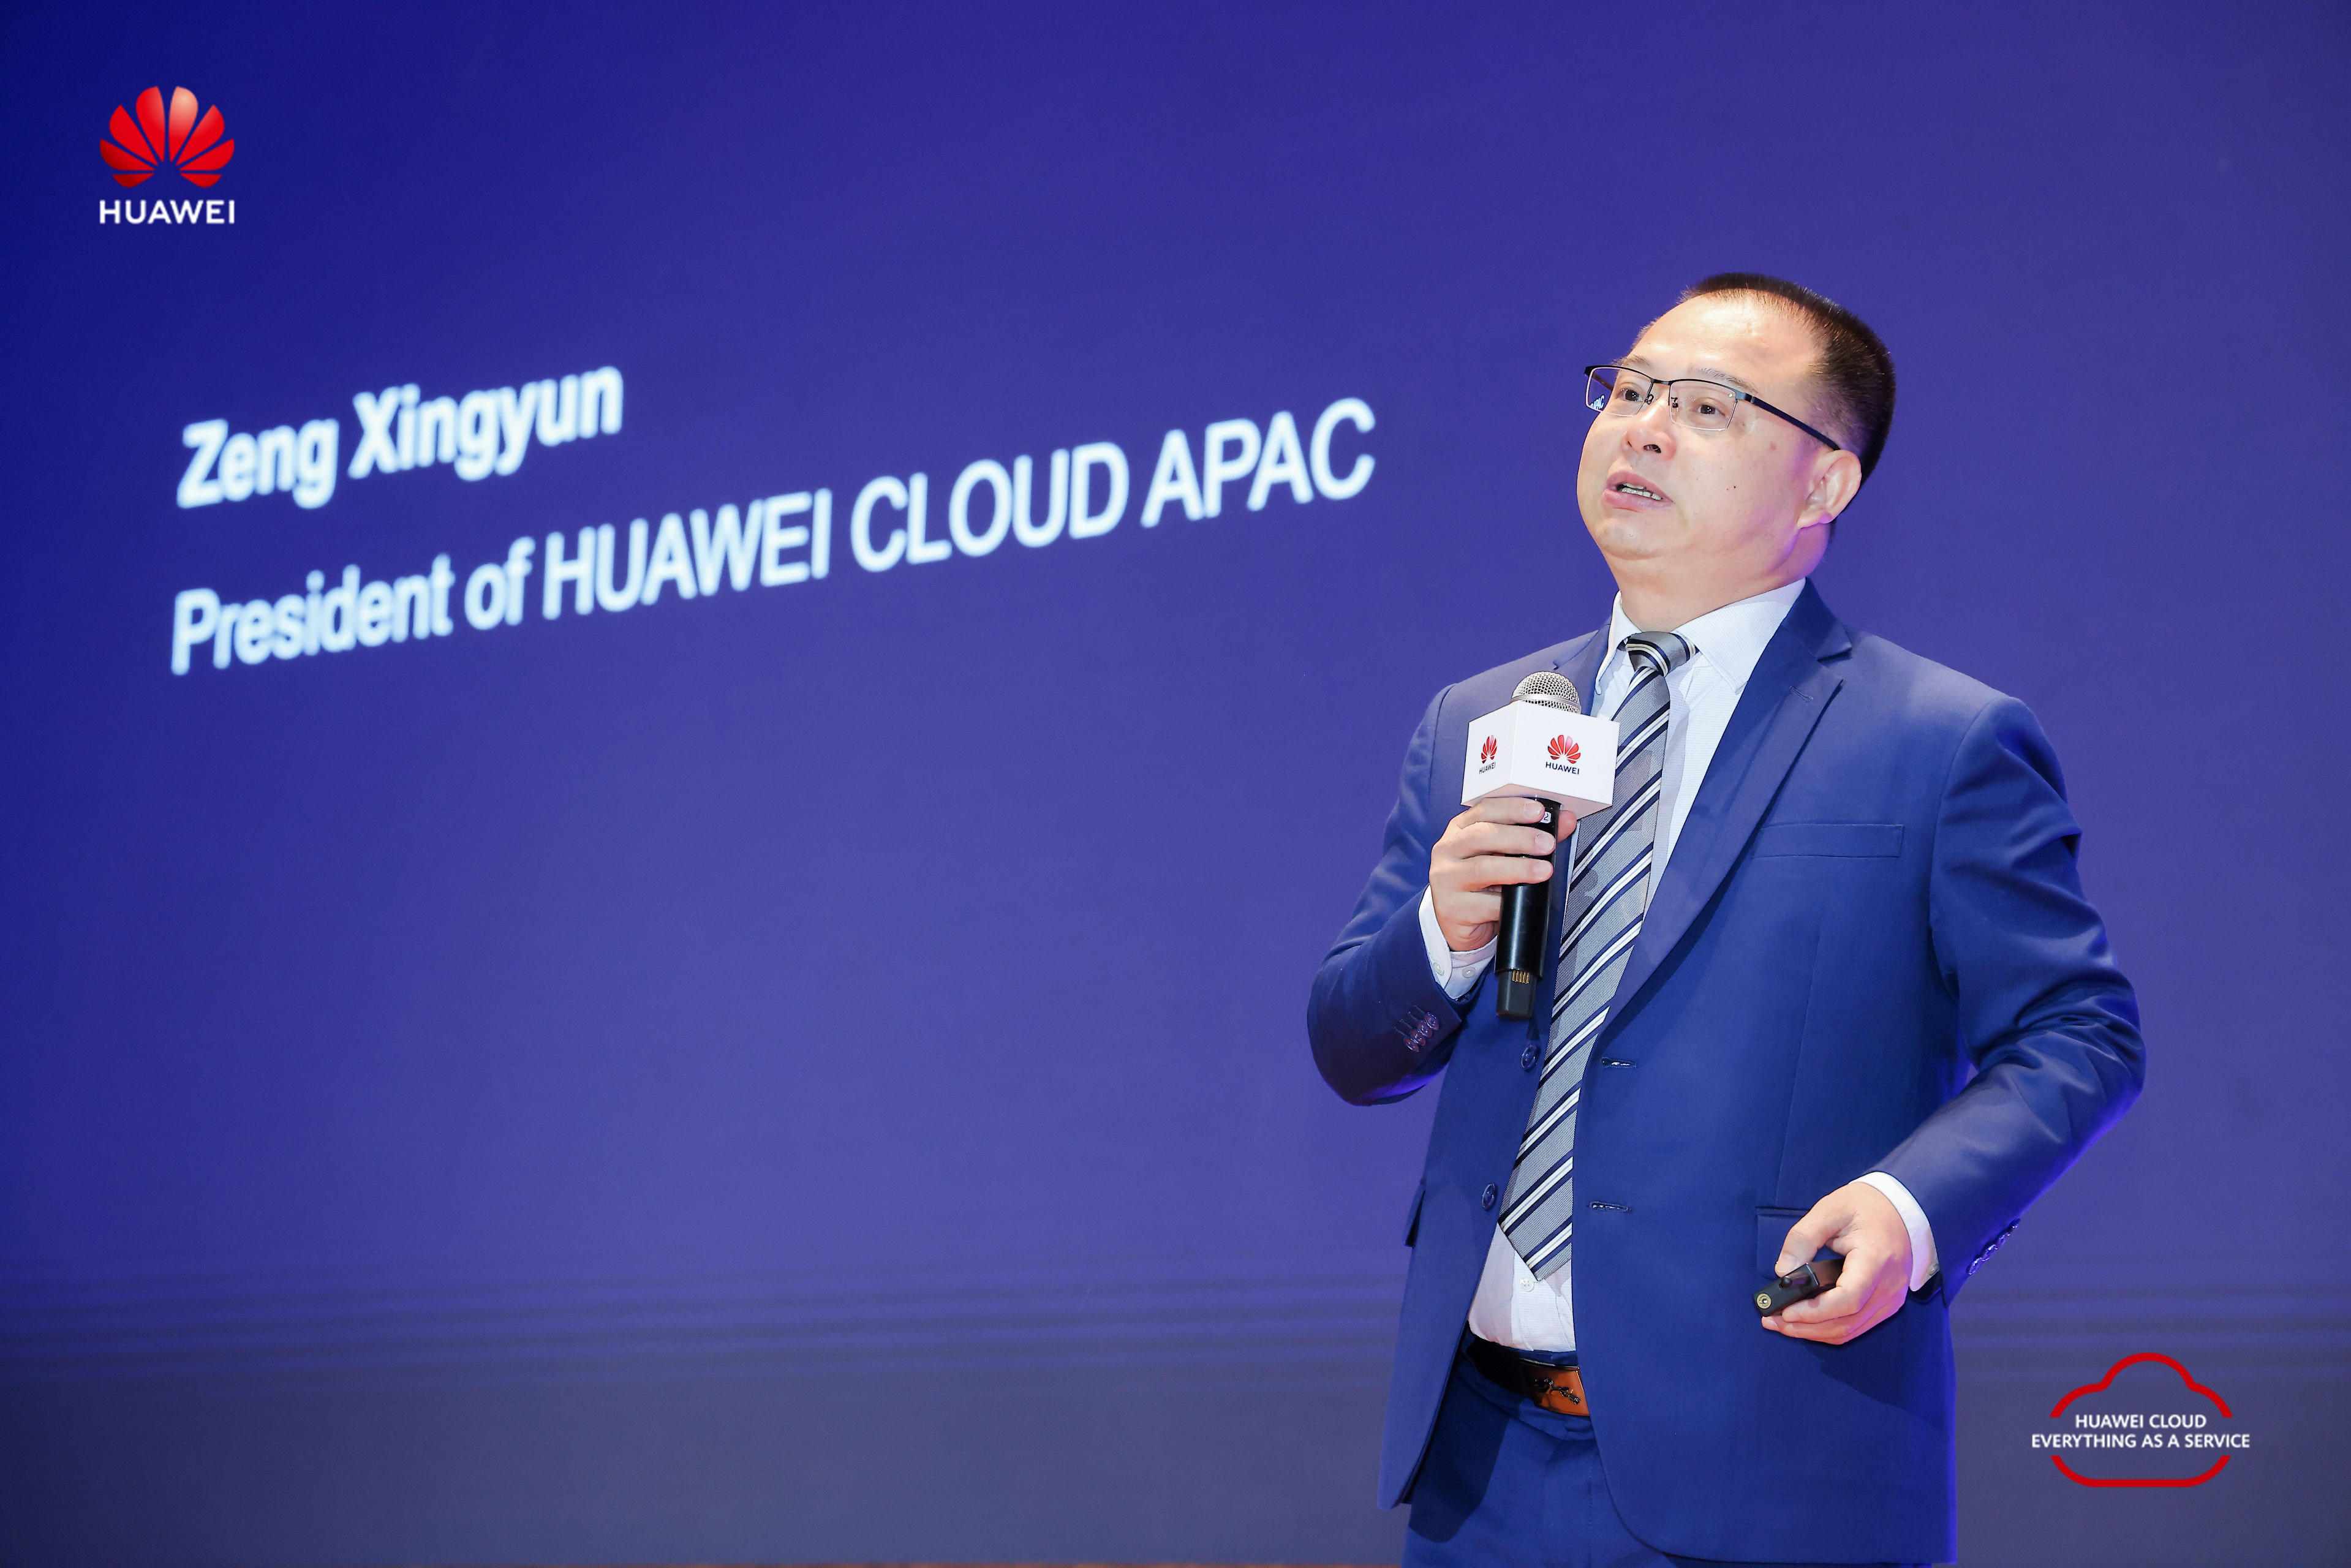 Zeng Xingyun, Huawei Cloud APAC President